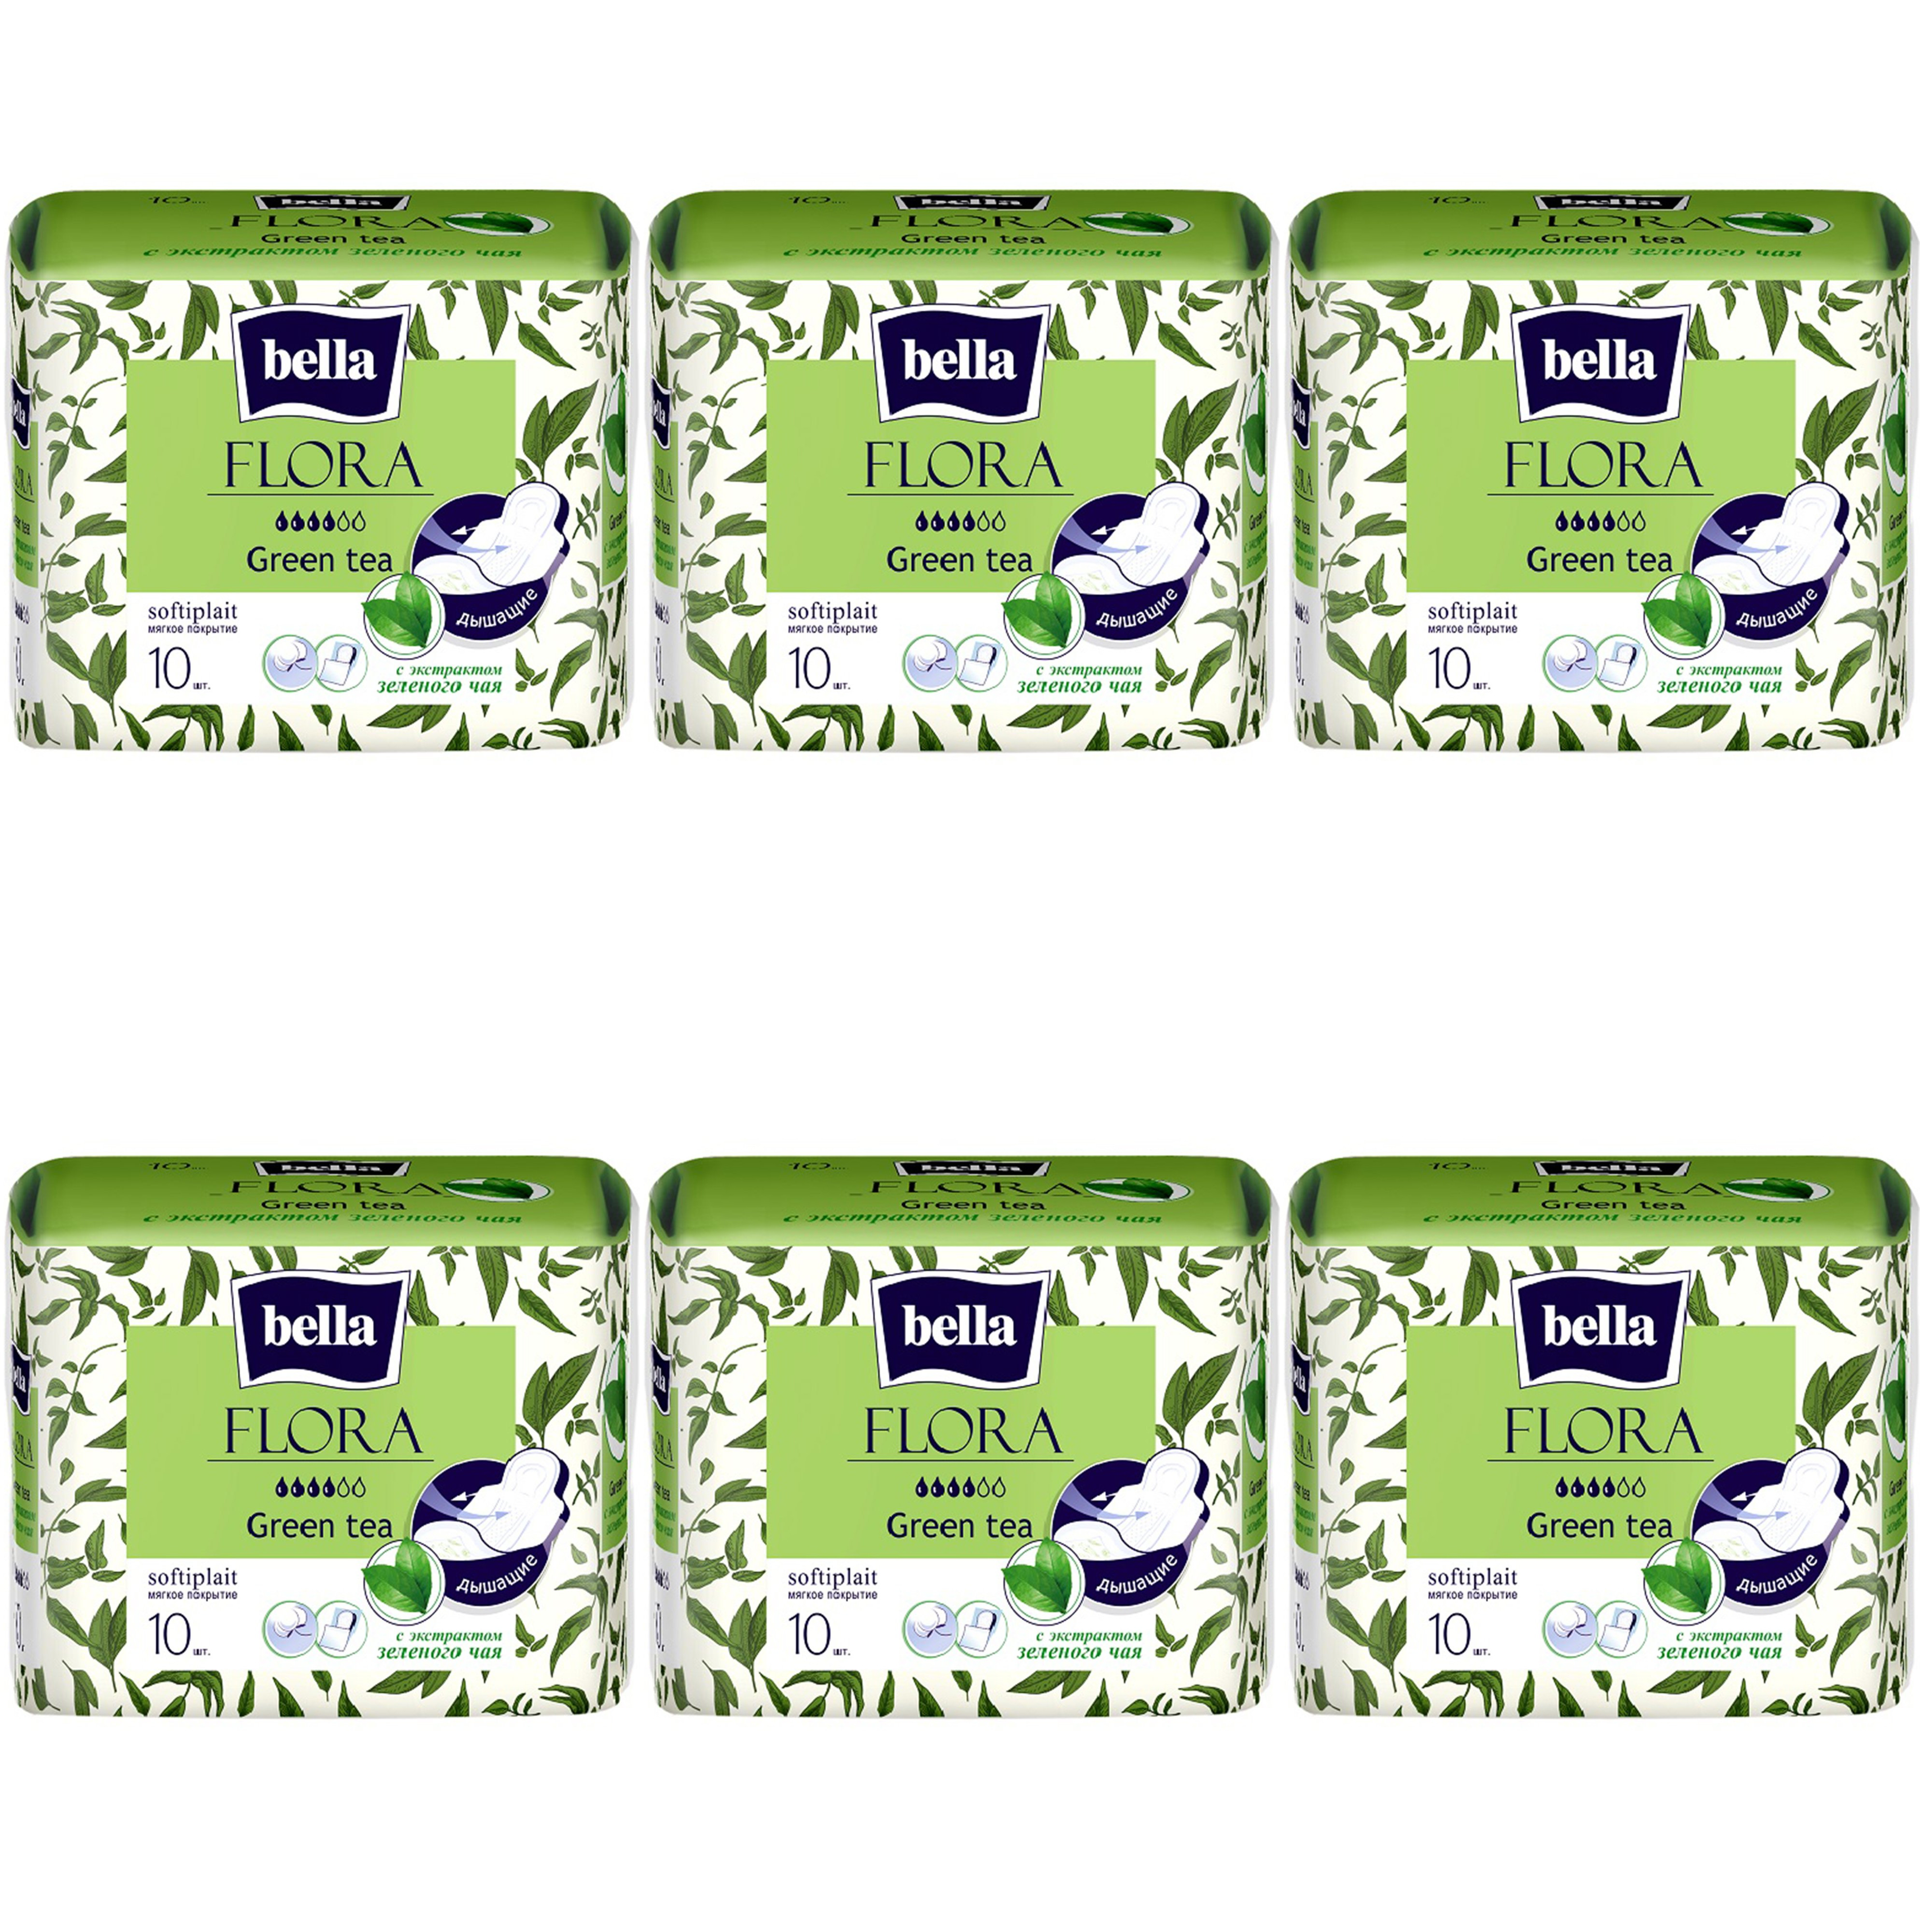 Прокладки Bella Flora Green tea, с экстрактом зеленого чая, 10шт. х 6уп.